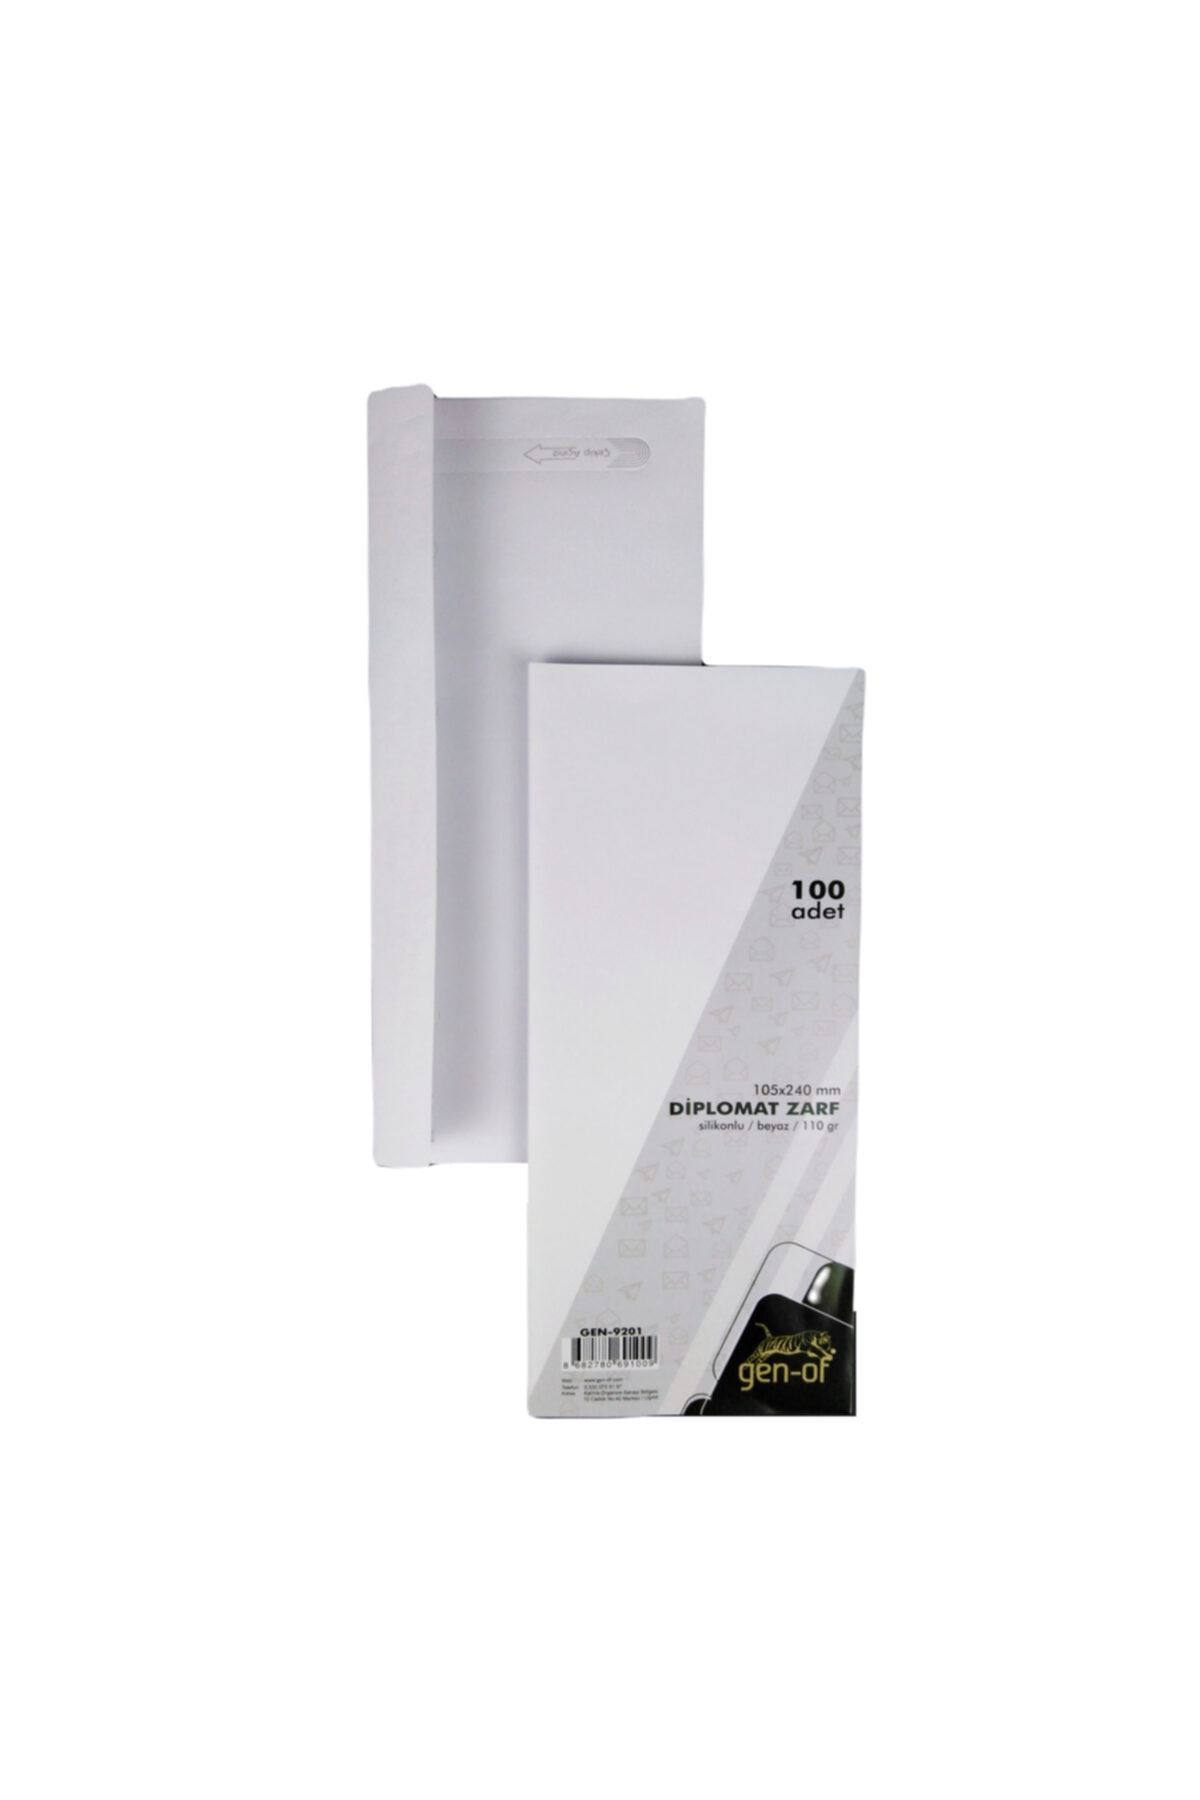 Gen-of Beyaz Silikonlu Penceresiz Diplomat Zarf 105x240 mm 110 gr 100'lü